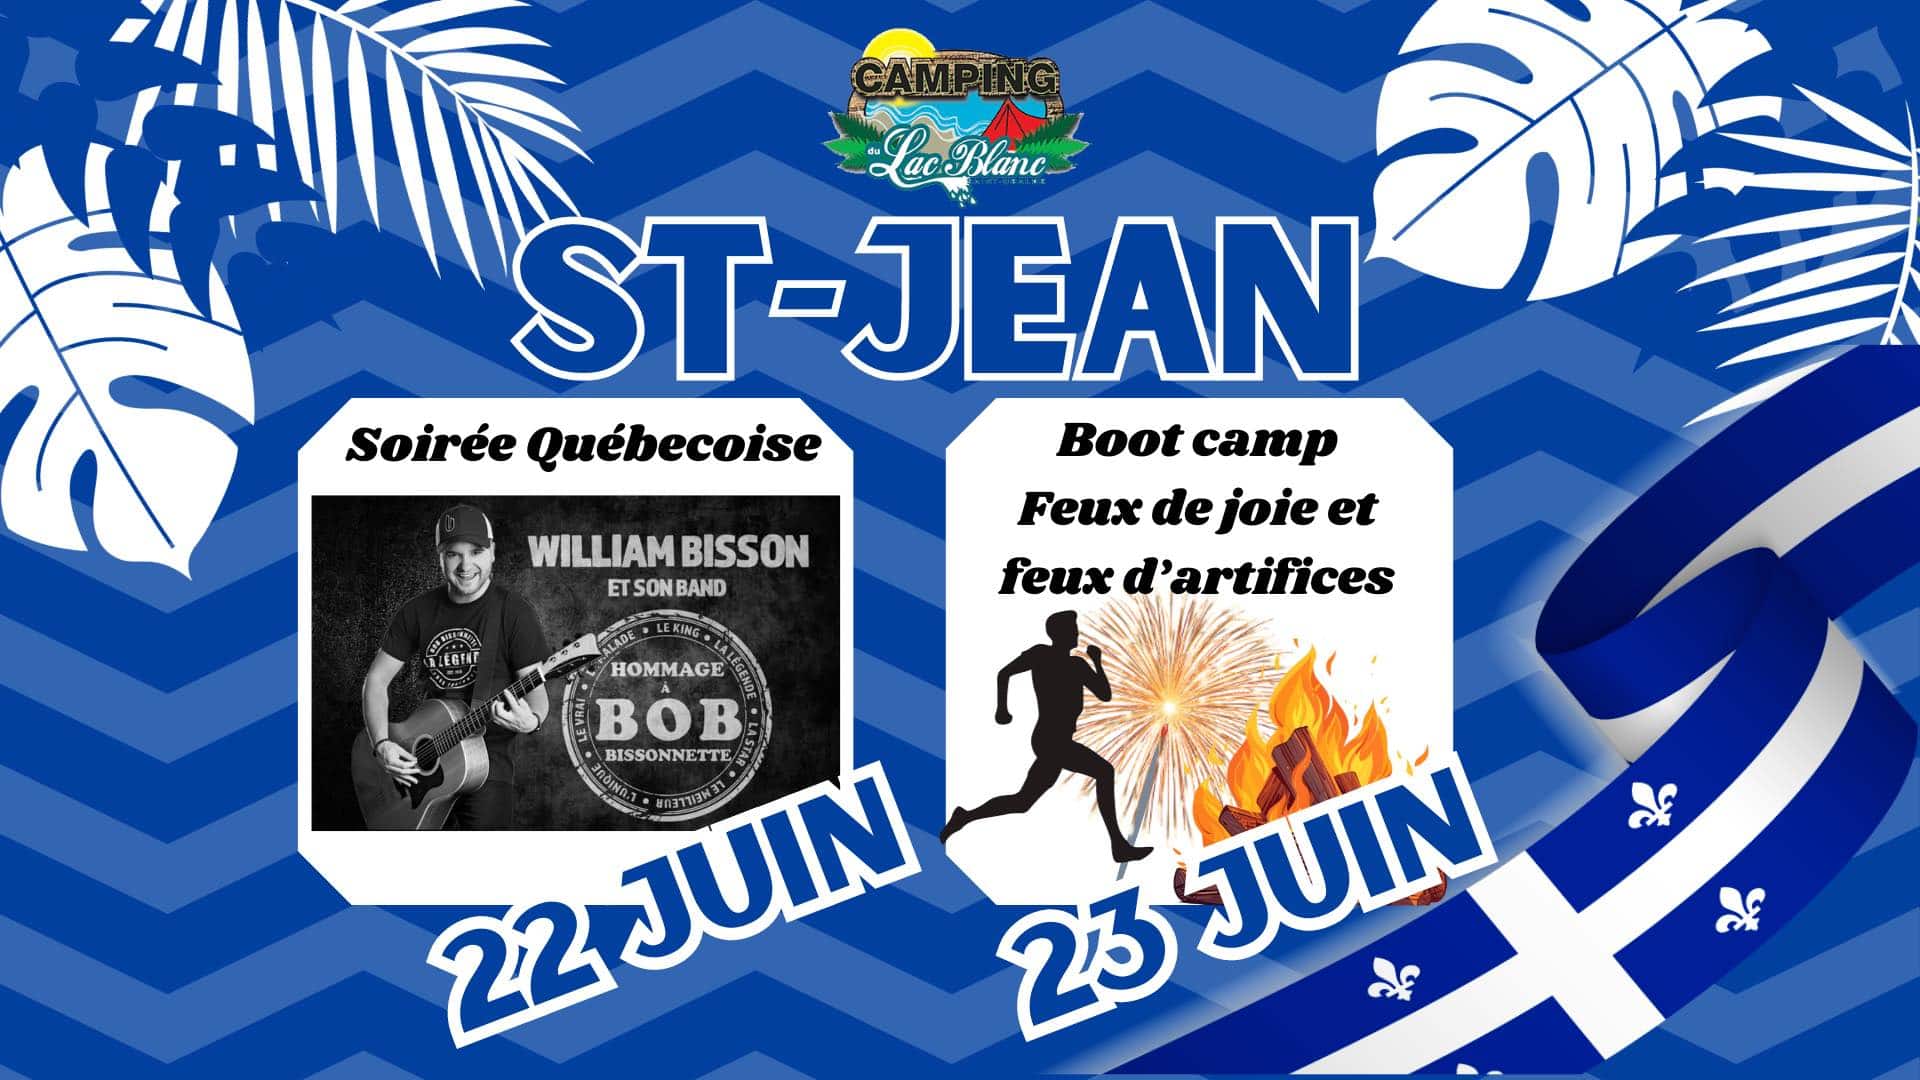 La St-Jean au camping du lac blanc, comprend une soirée Québecoise avec William Bisson - Hommage a Bob Bissonnette le 22 juin 2024 & Boot camp, Feux de joie et feux d'artifices le 23 juin 2024